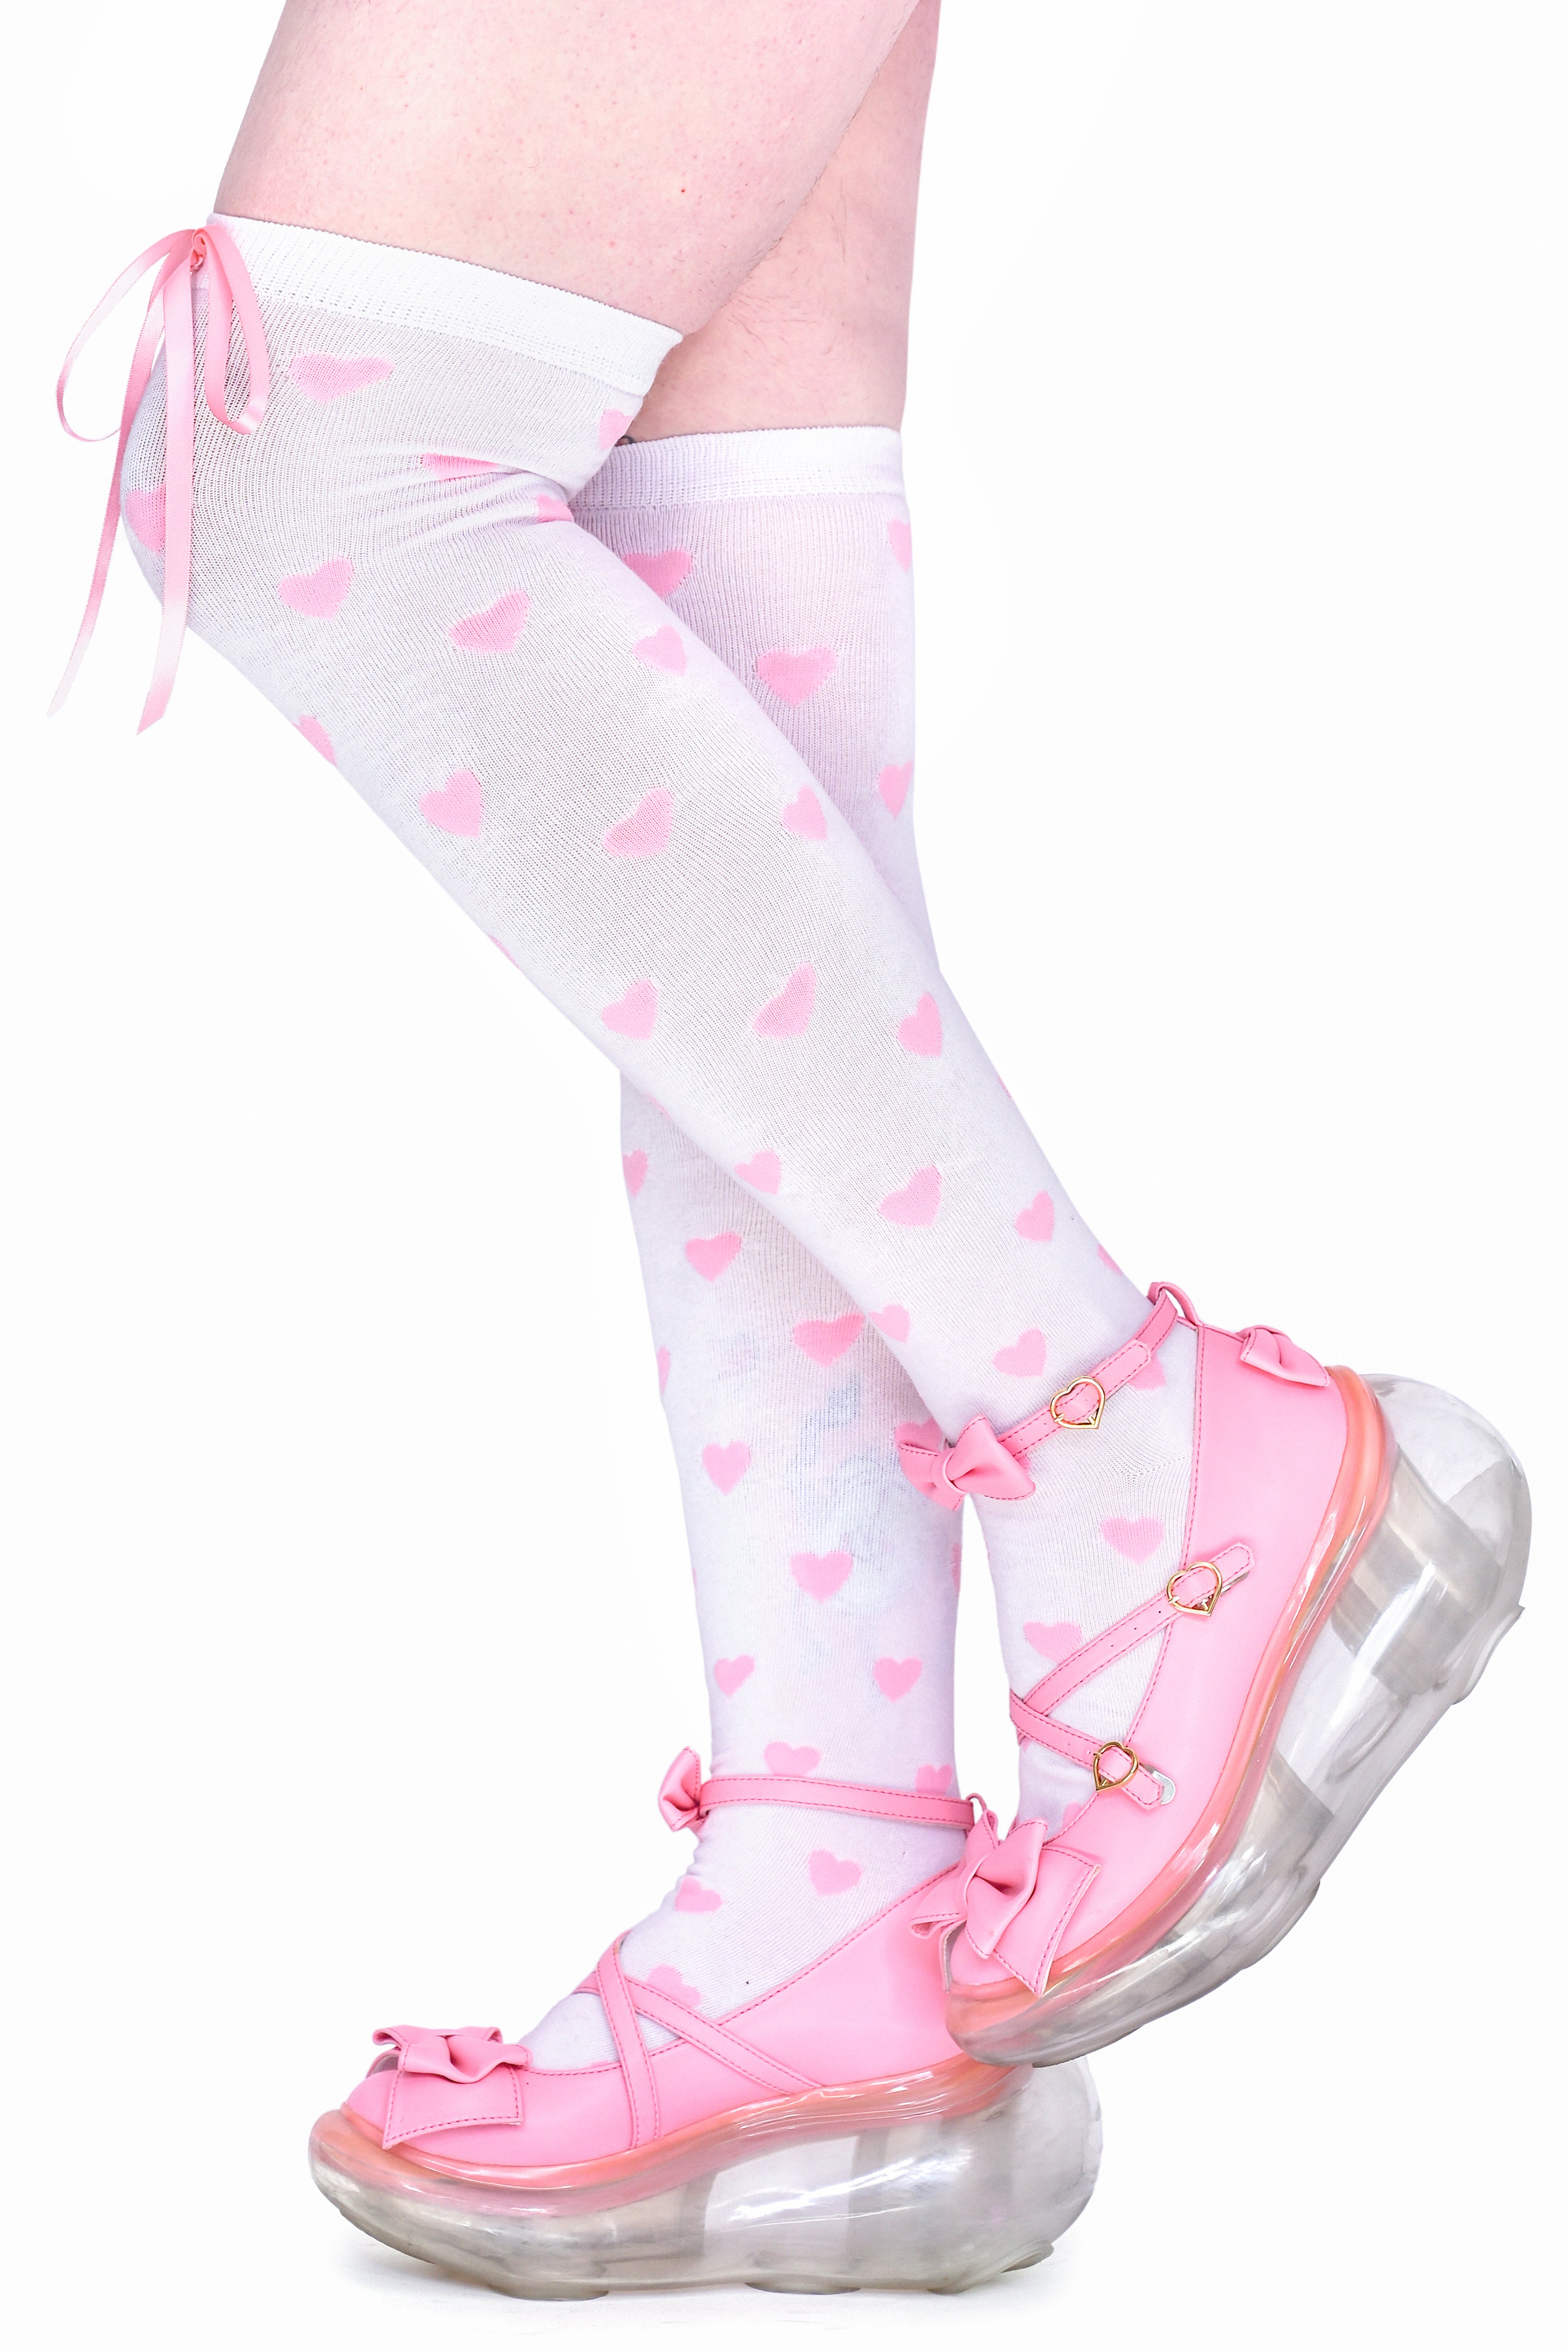 Heavenly Heart Over Knee Socks - White/Pink